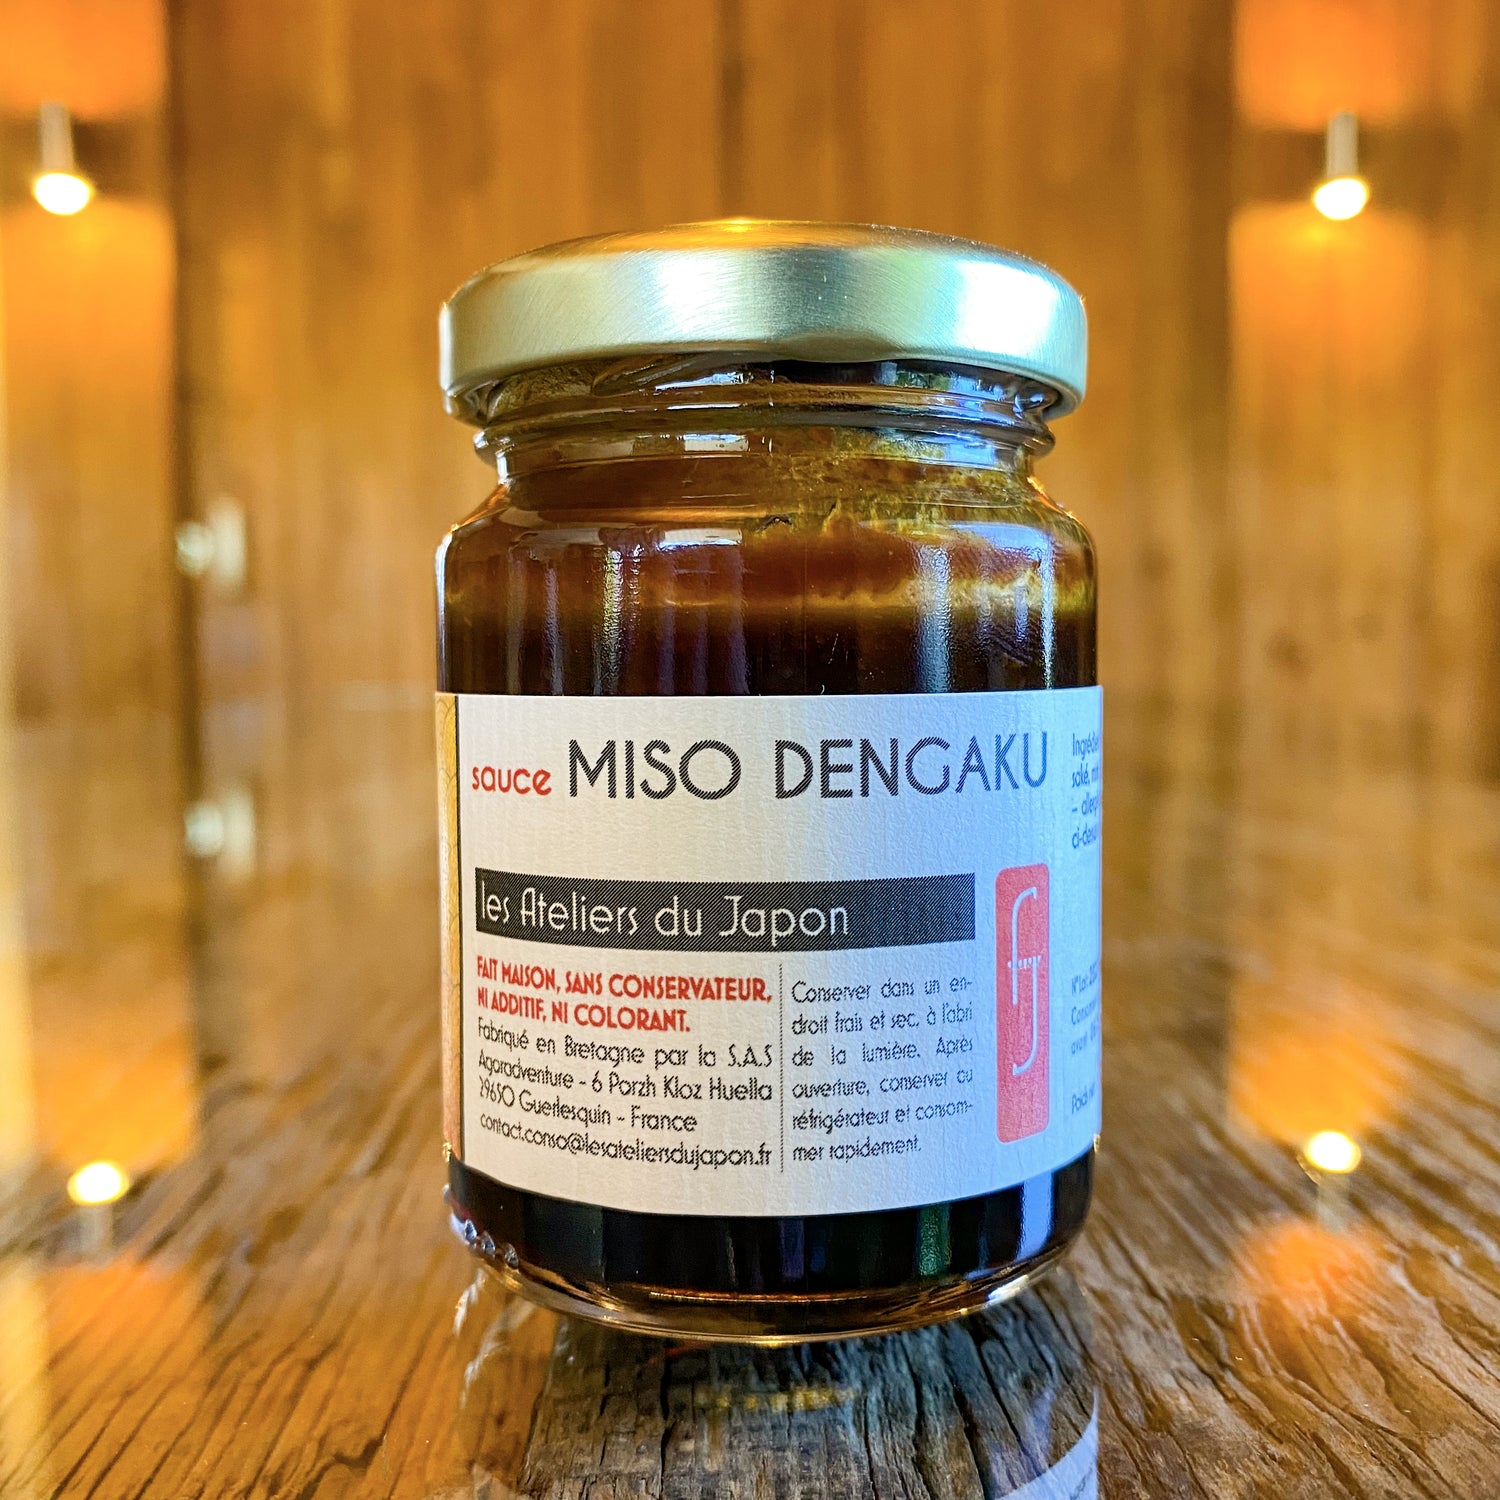 Sauce miso dengaku - Les Ateliers du Japon